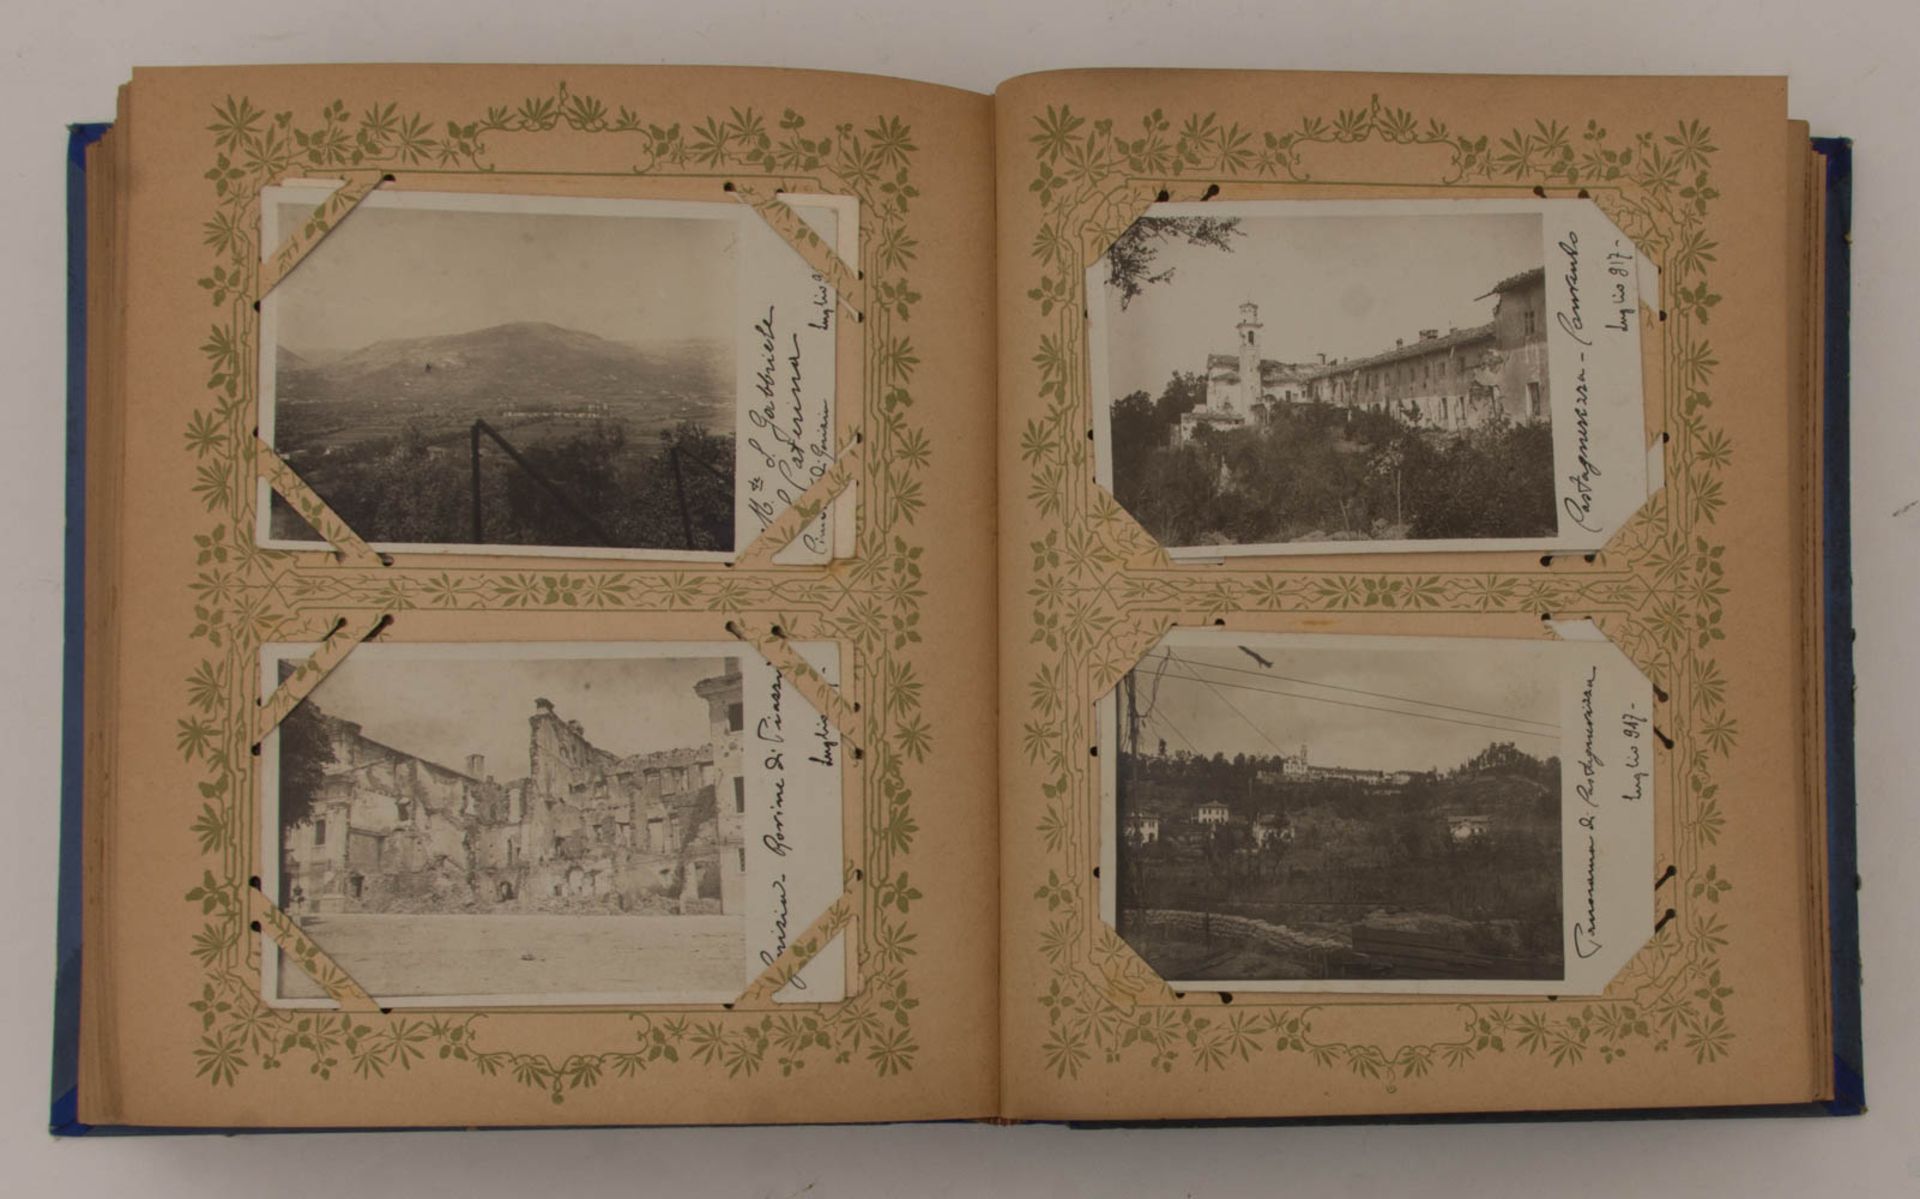 Historische Ansichts- und Autogrammkartensammlung, Deutschland, um 1910. - Bild 5 aus 6